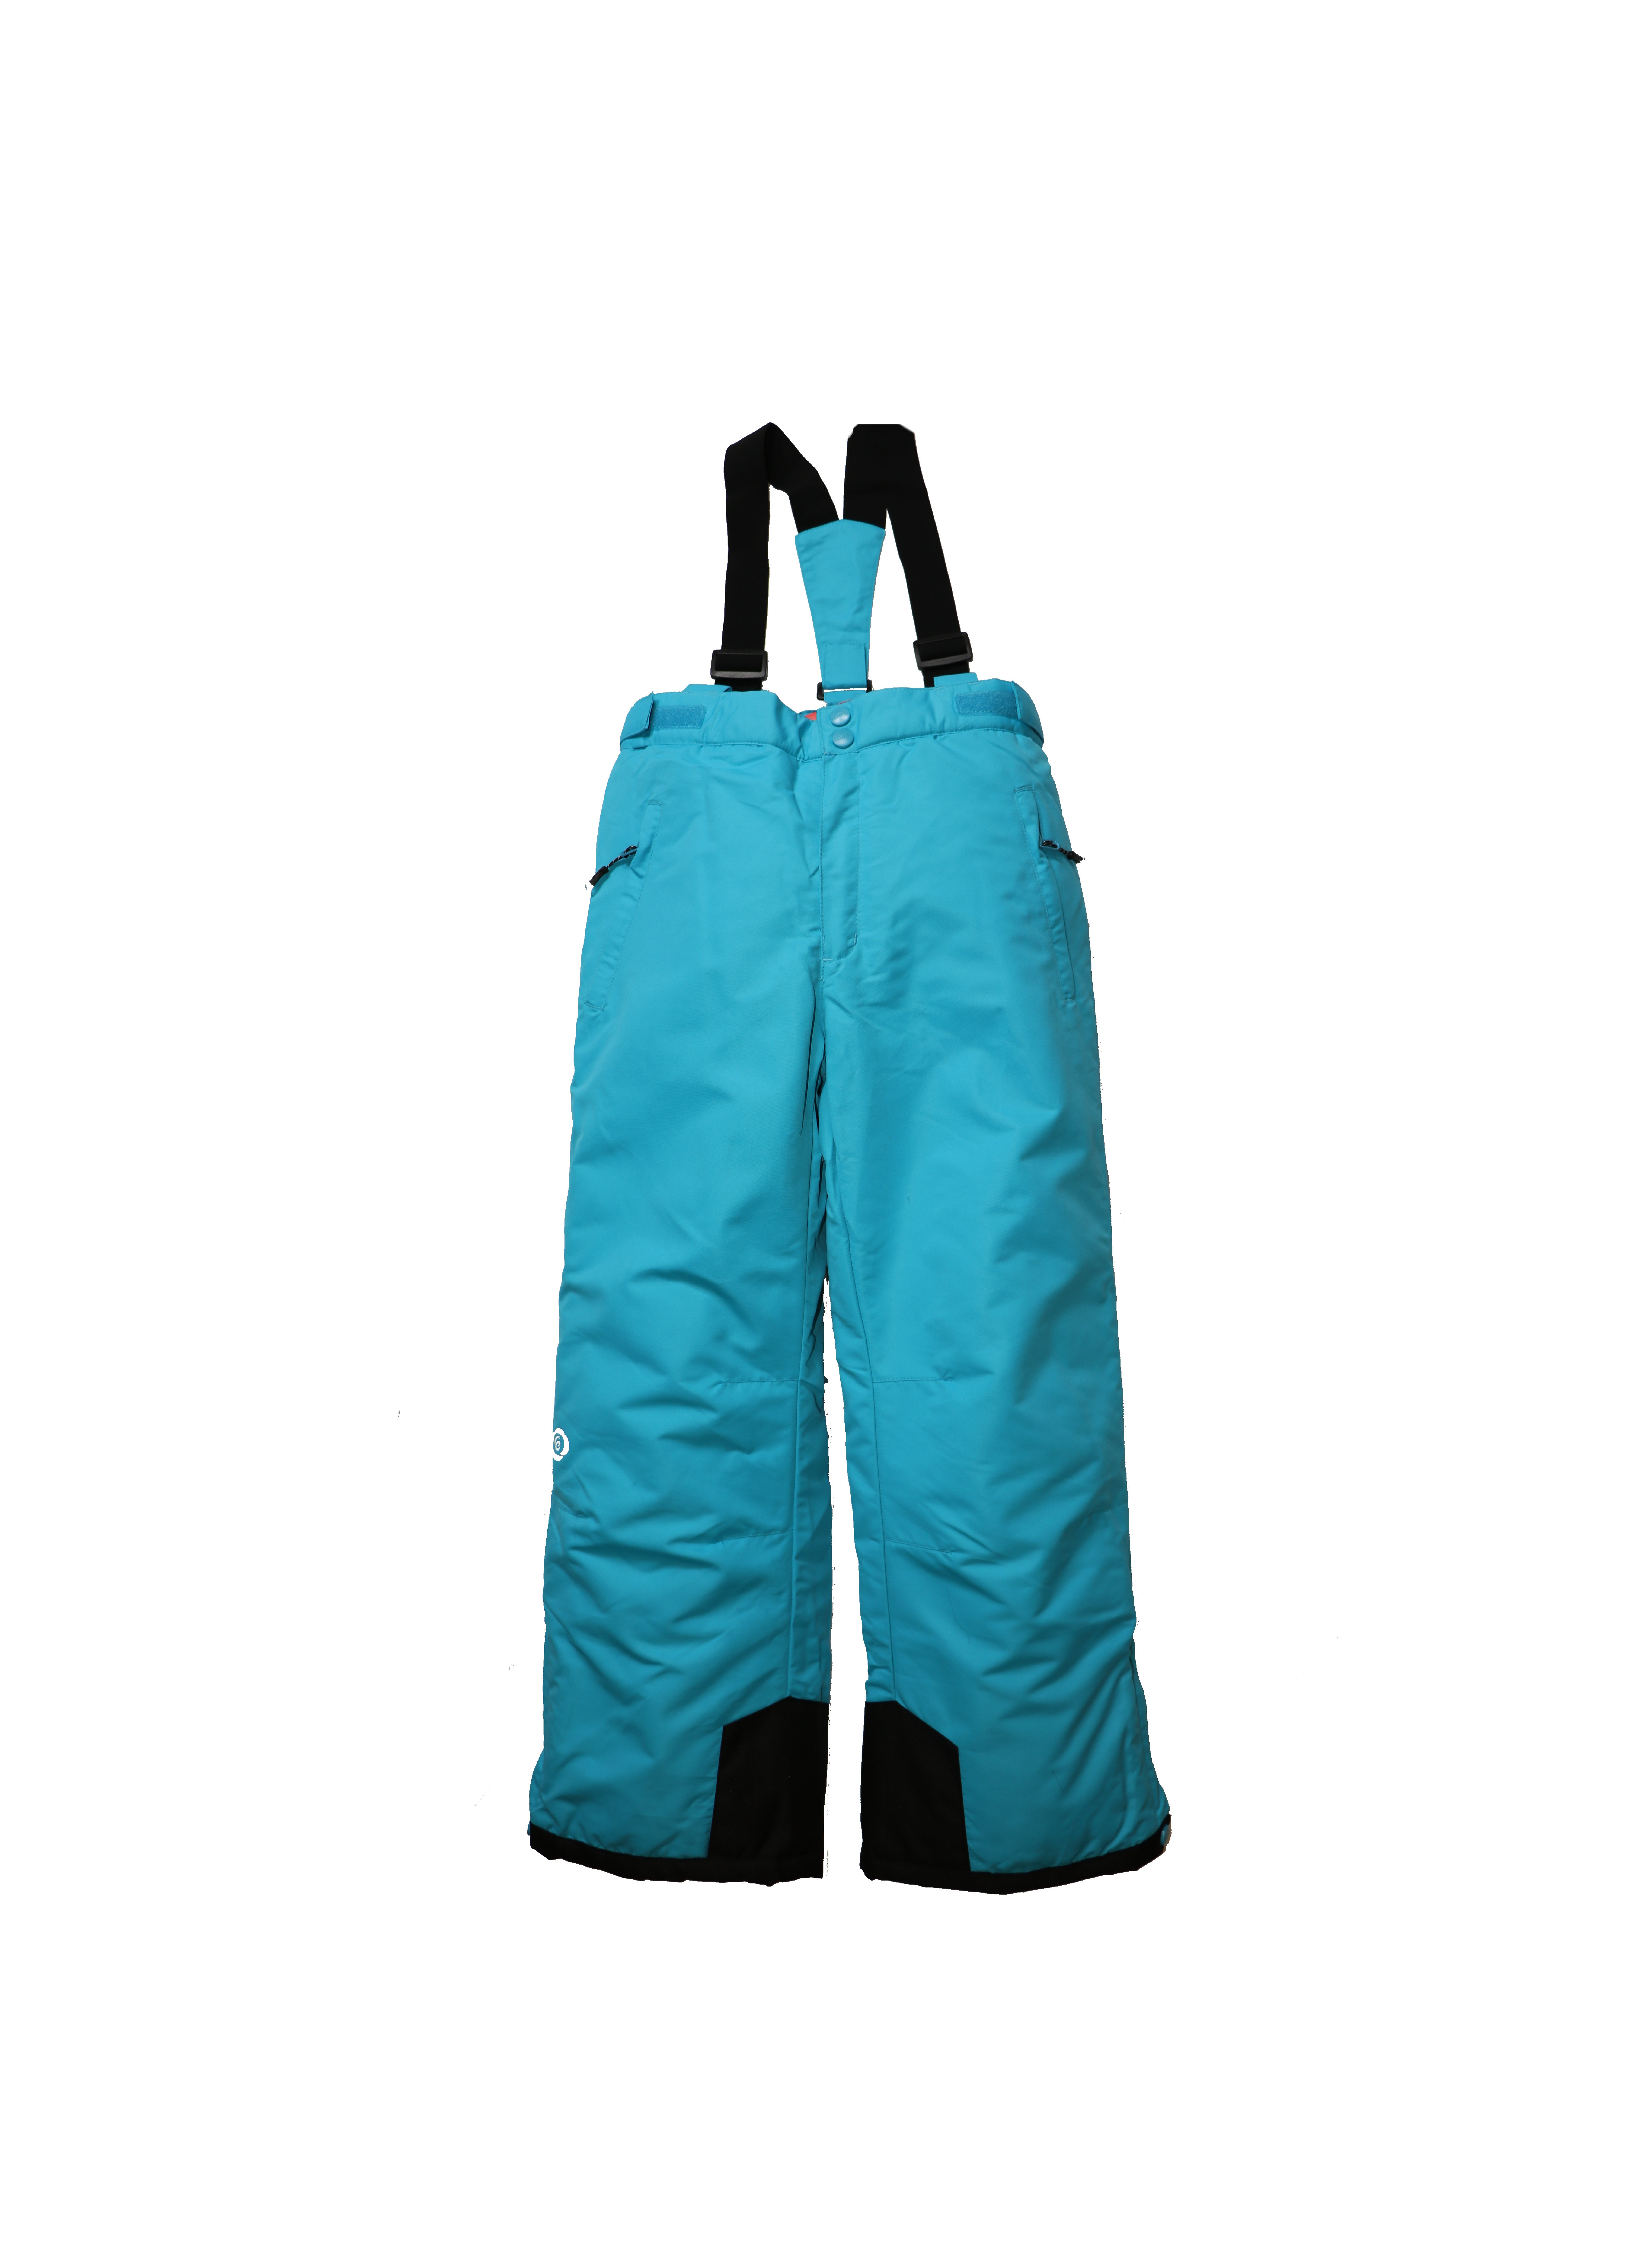 Dětské lyžařské kalhoty HB03-M2 tyrkysová Barva: tyrkysová, Velikost: 134 - 140 cm